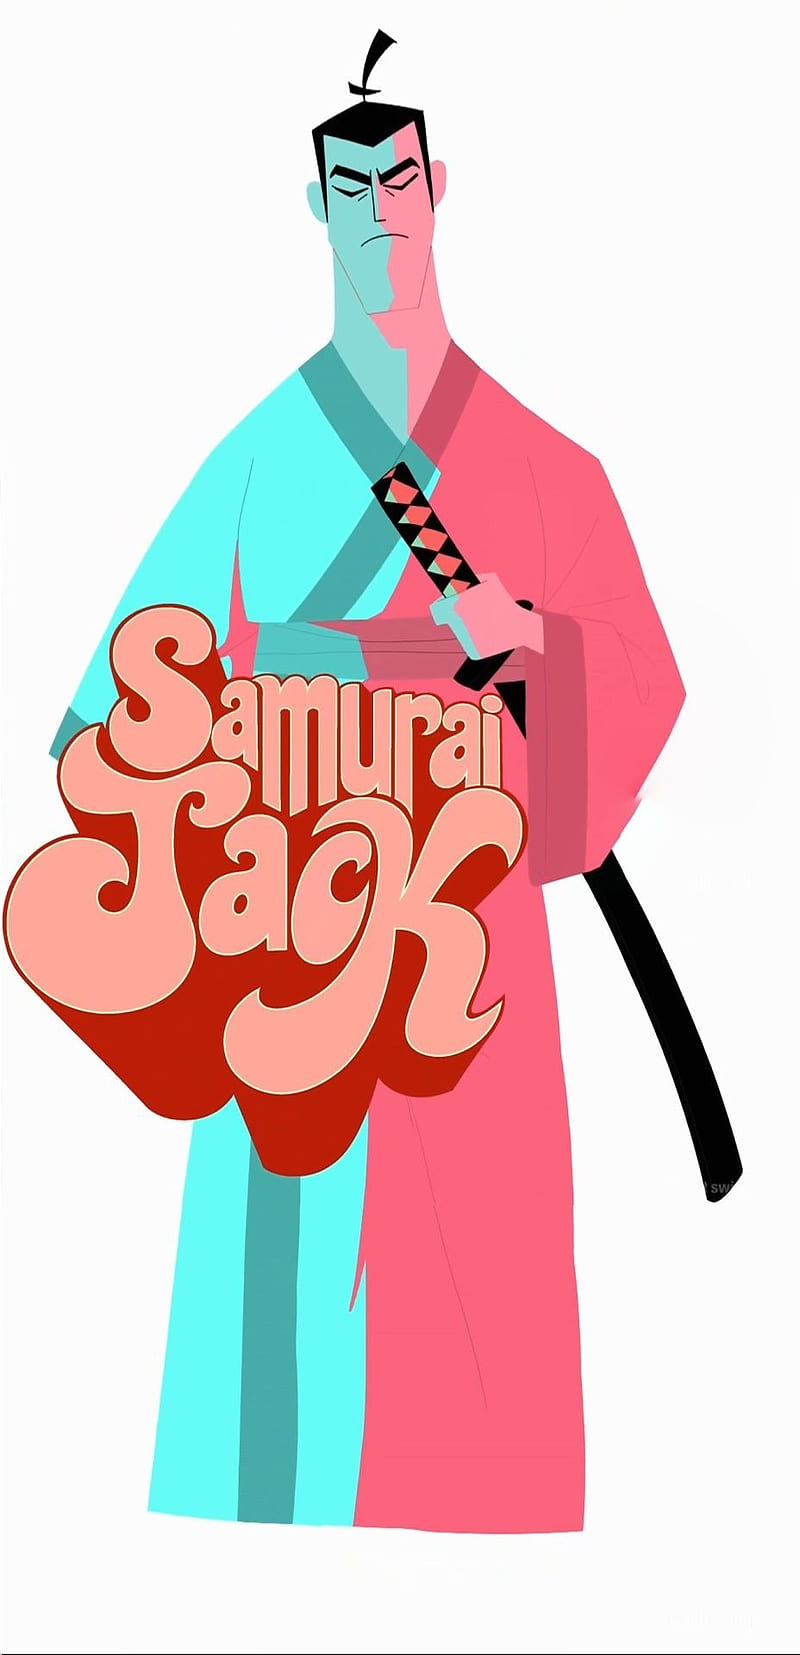 samurai jack wallpaper